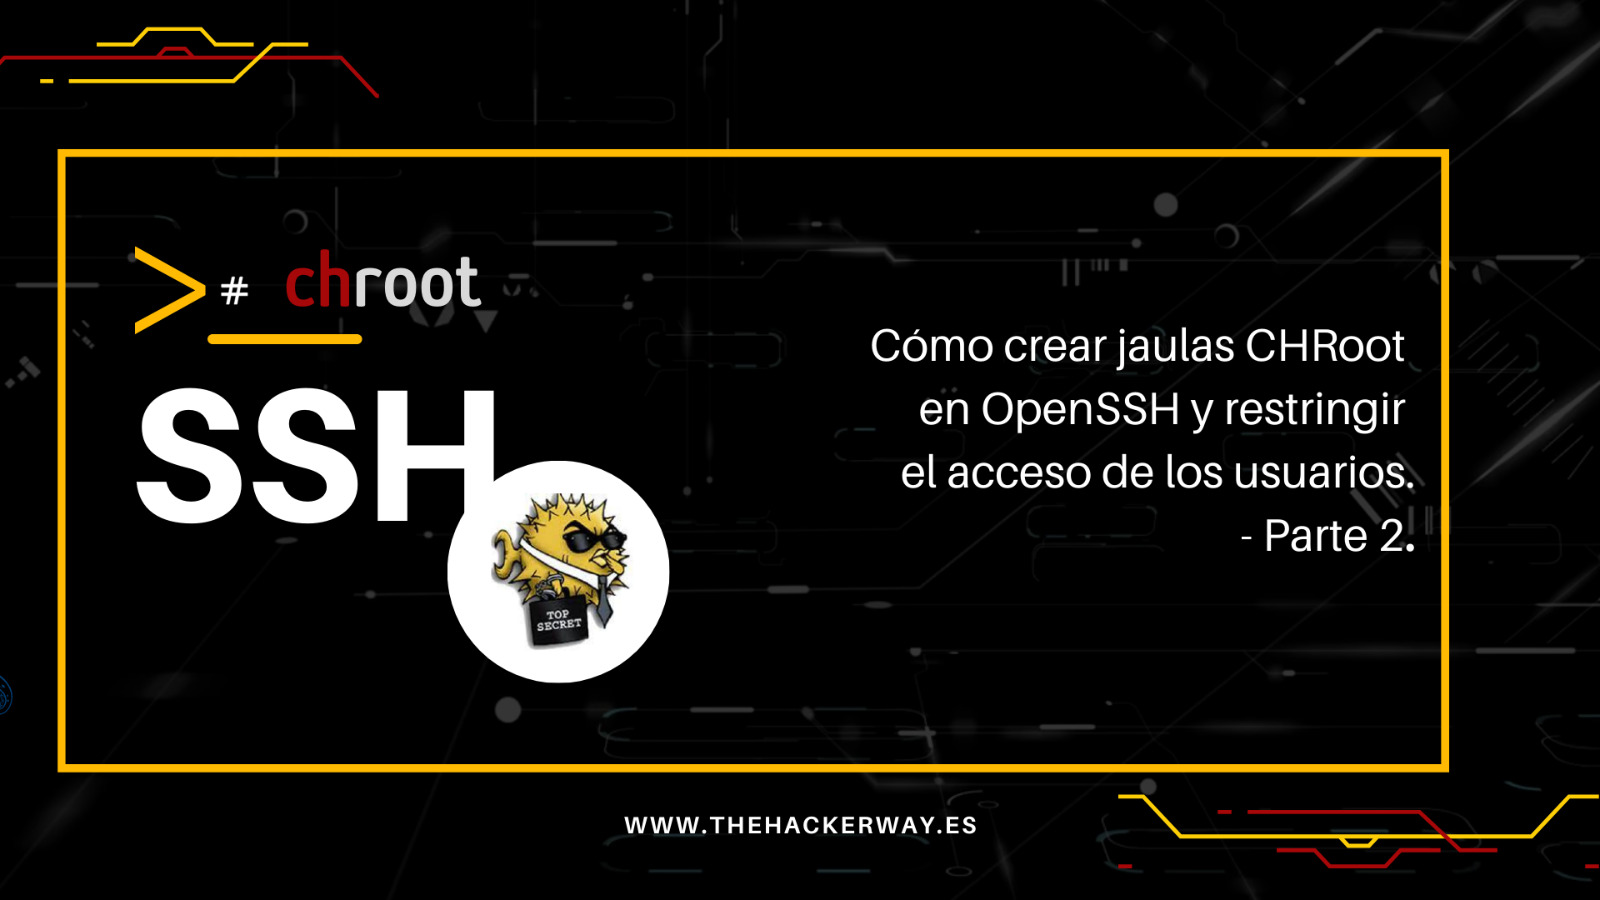 Cómo crear jaulas CHRoot en OpenSSH y restringir el acceso de los
usuarios – Parte 2 de 2